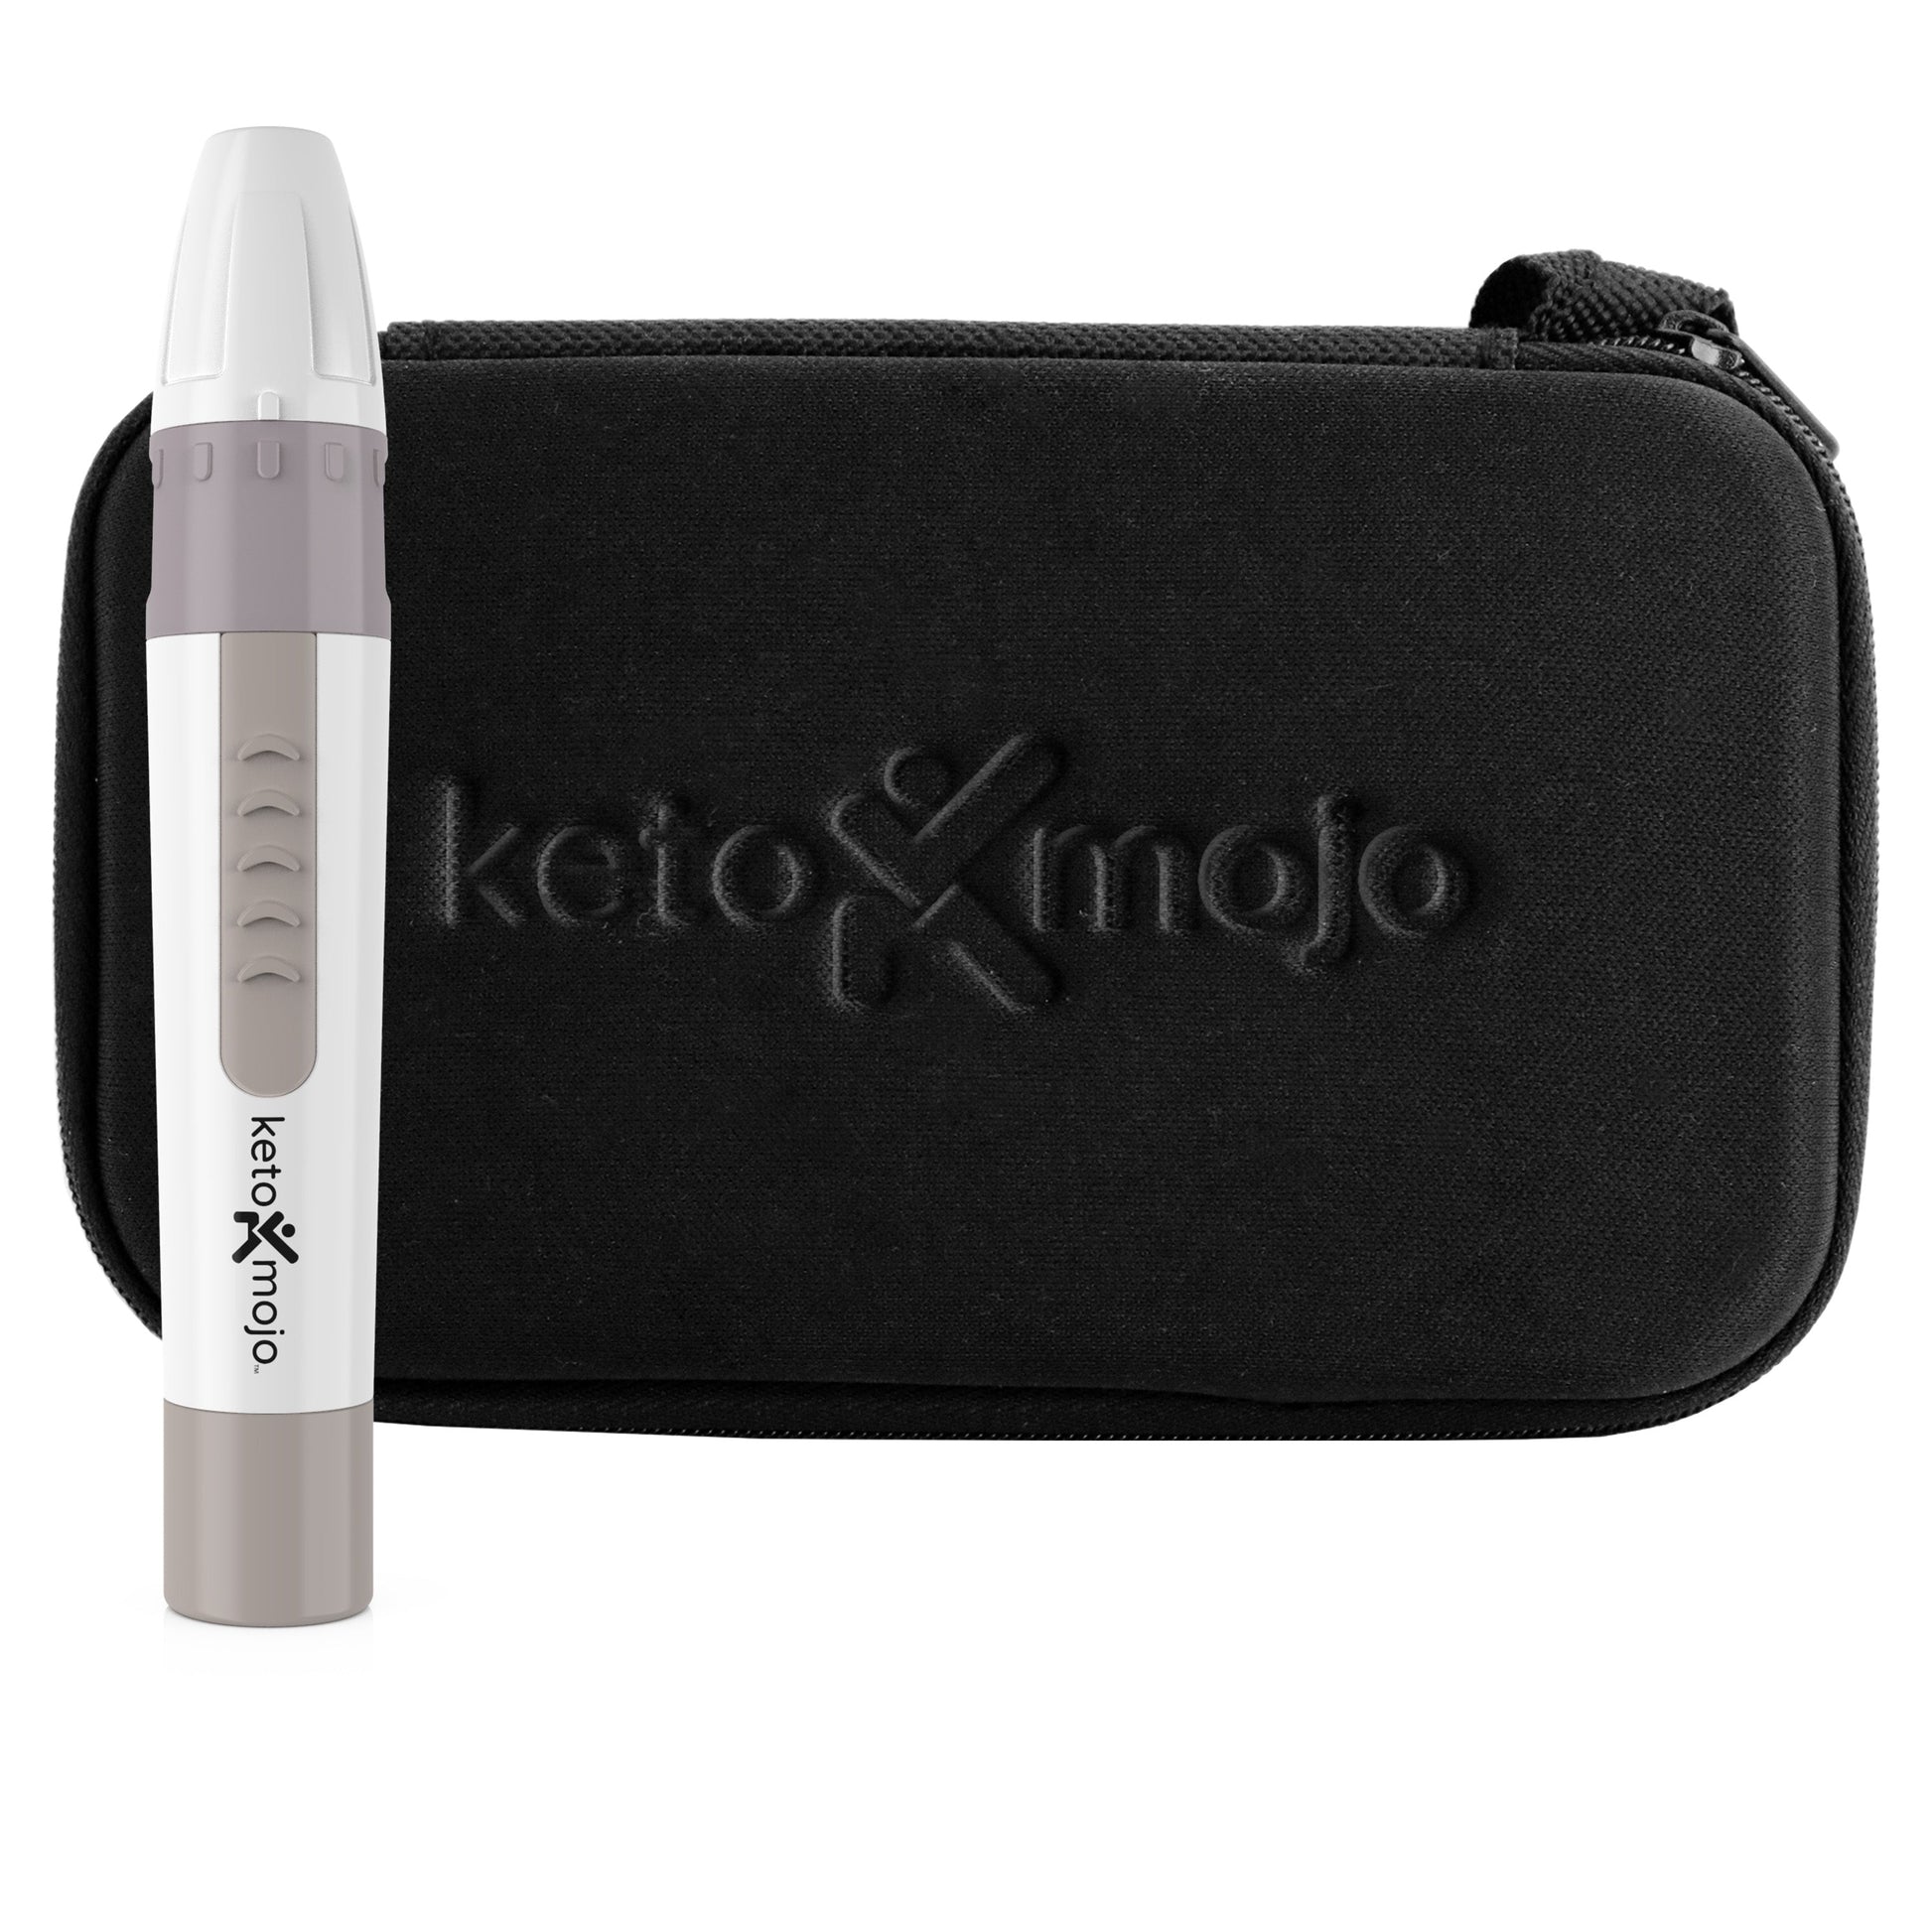 GKI-Bluetooth Blood Glucose & Ketone Meter - BASIC STARTER KIT (mg/dL)